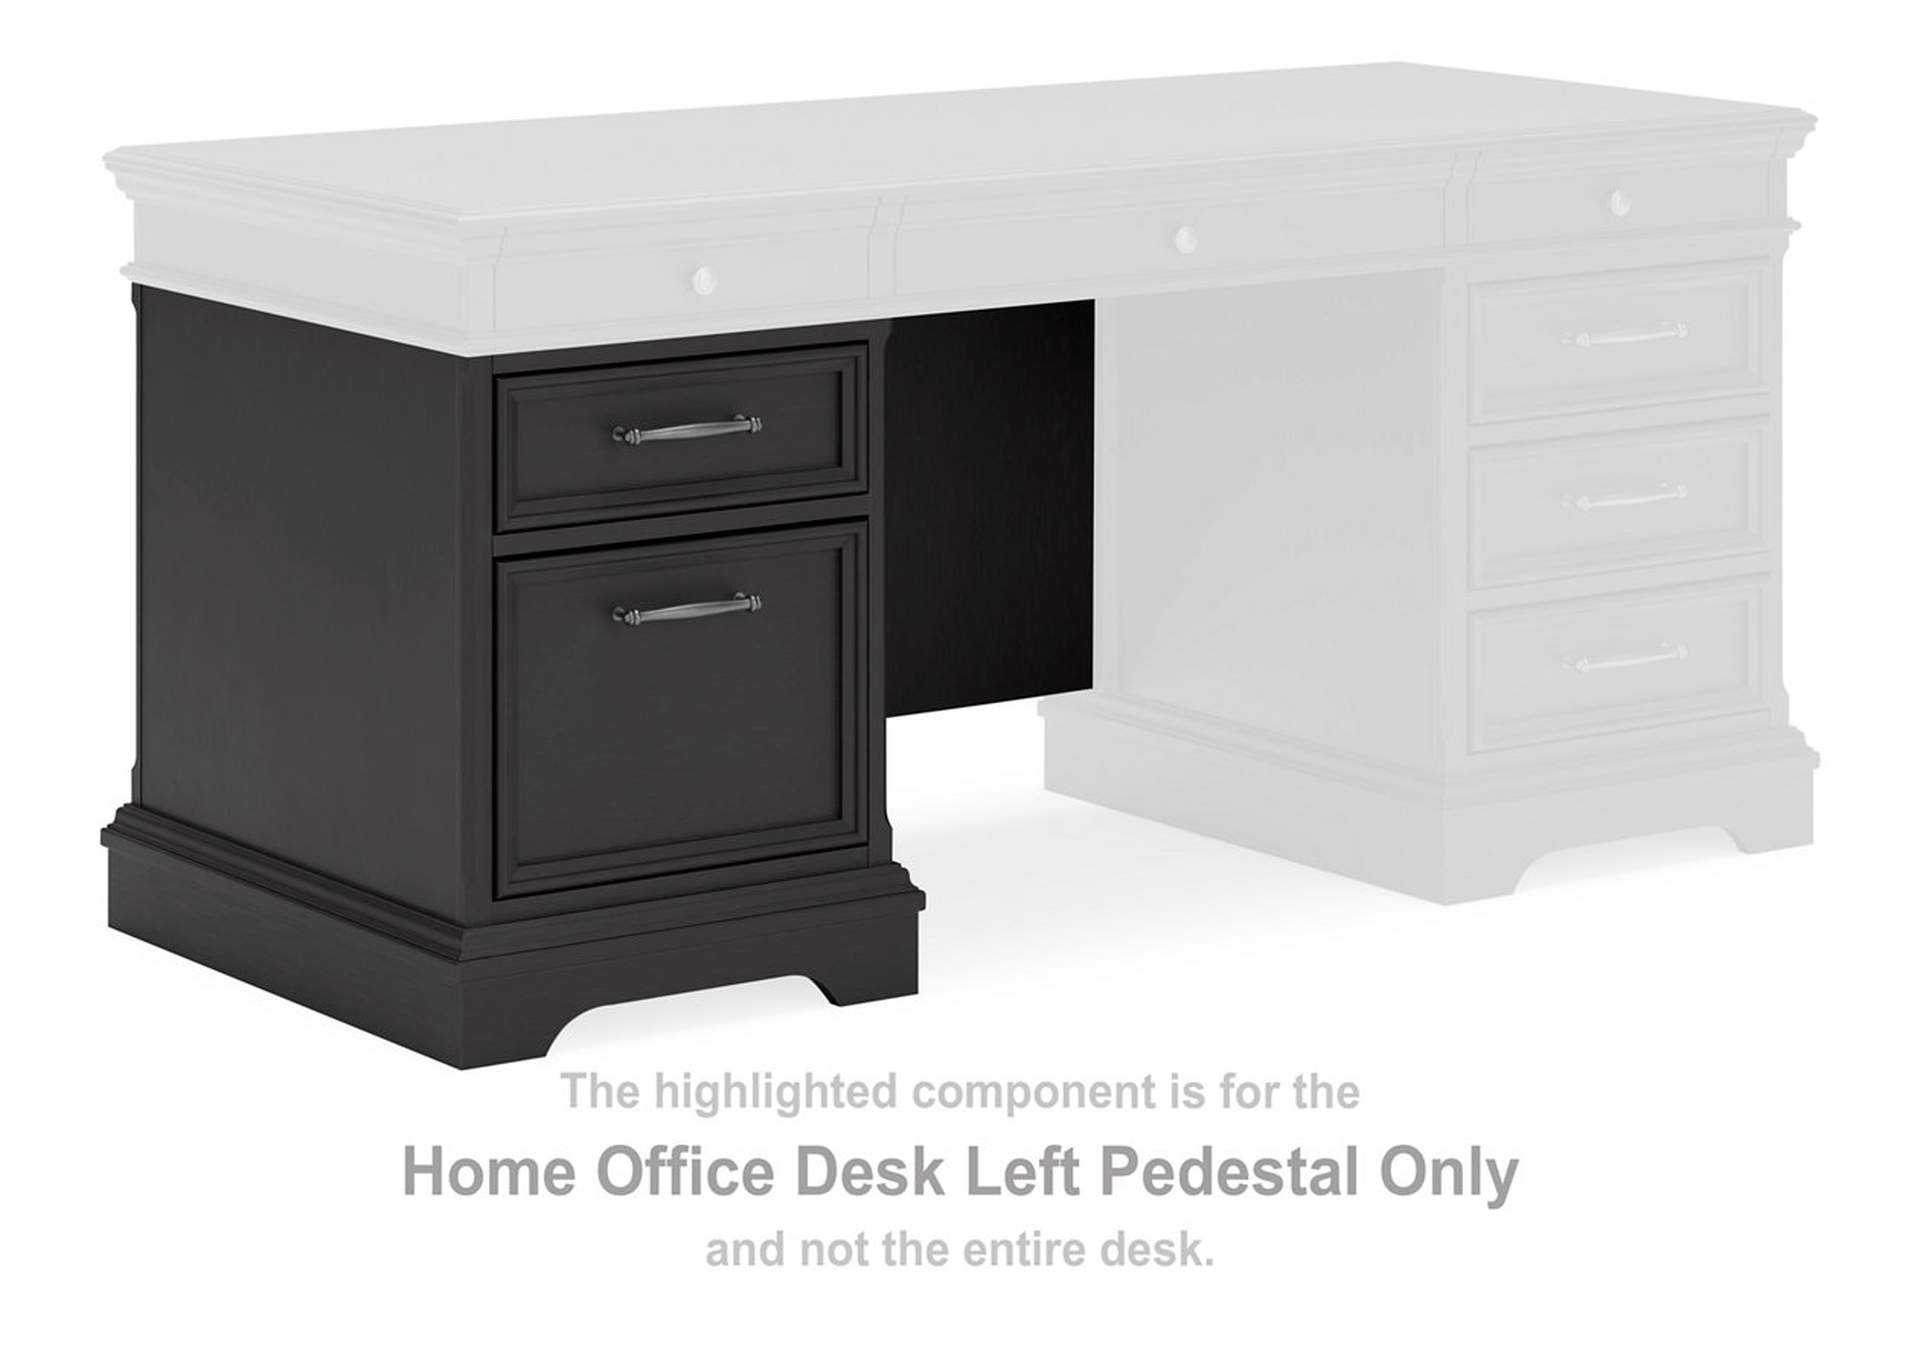 Beckincreek Home Office Desk Left Pedestal,Signature Design By Ashley